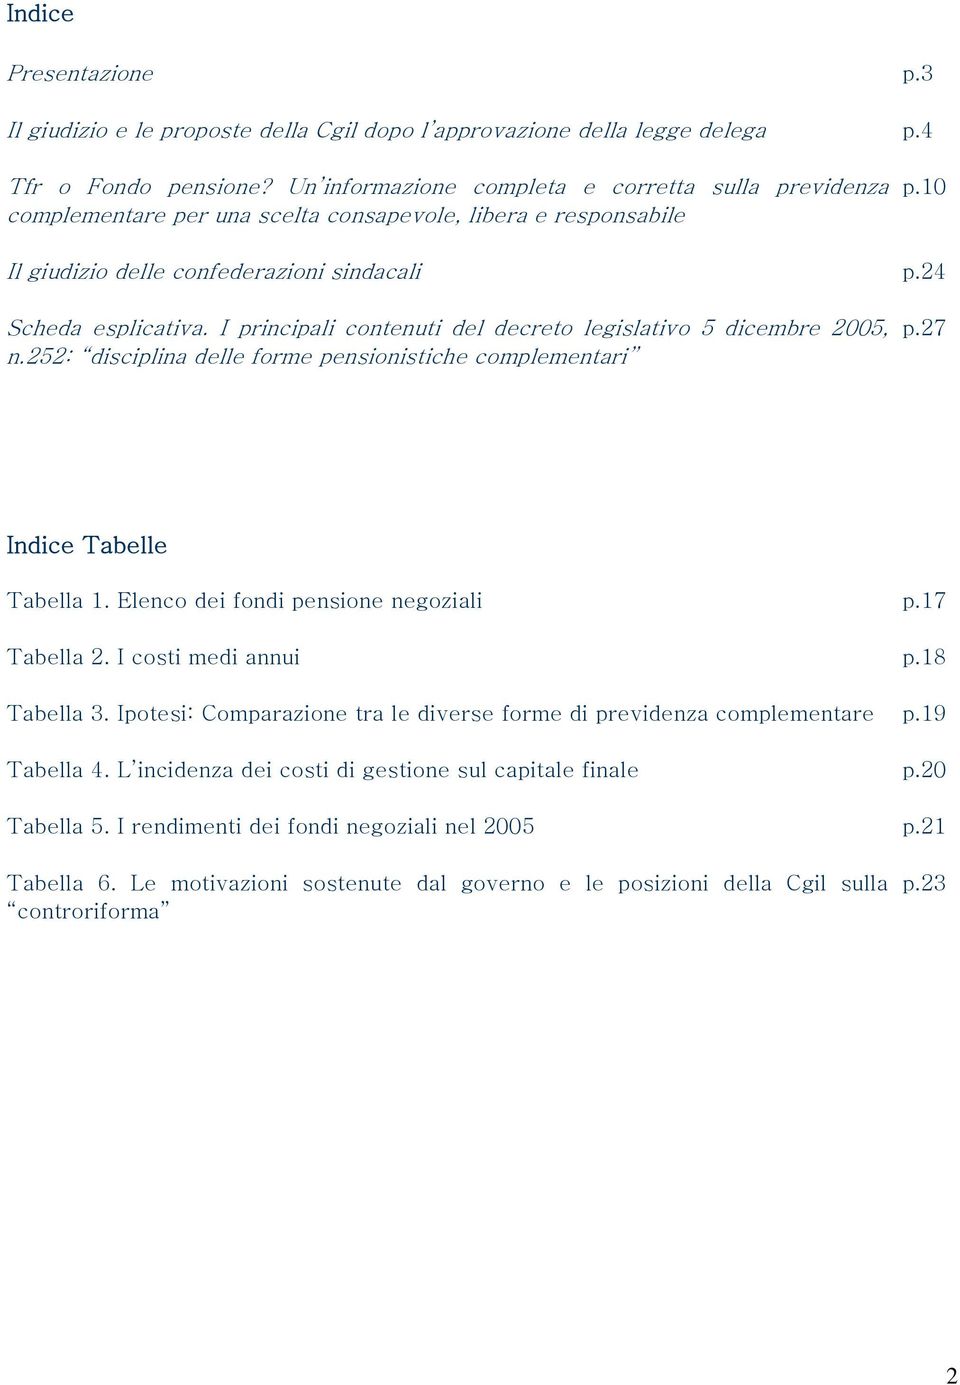 I principali contenuti del decreto legislativo 5 dicembre 2005, n.252: disciplina delle forme pensionistiche complementari p.27 Indice Tabelle Tabella 1. Elenco dei fondi pensione negoziali p.